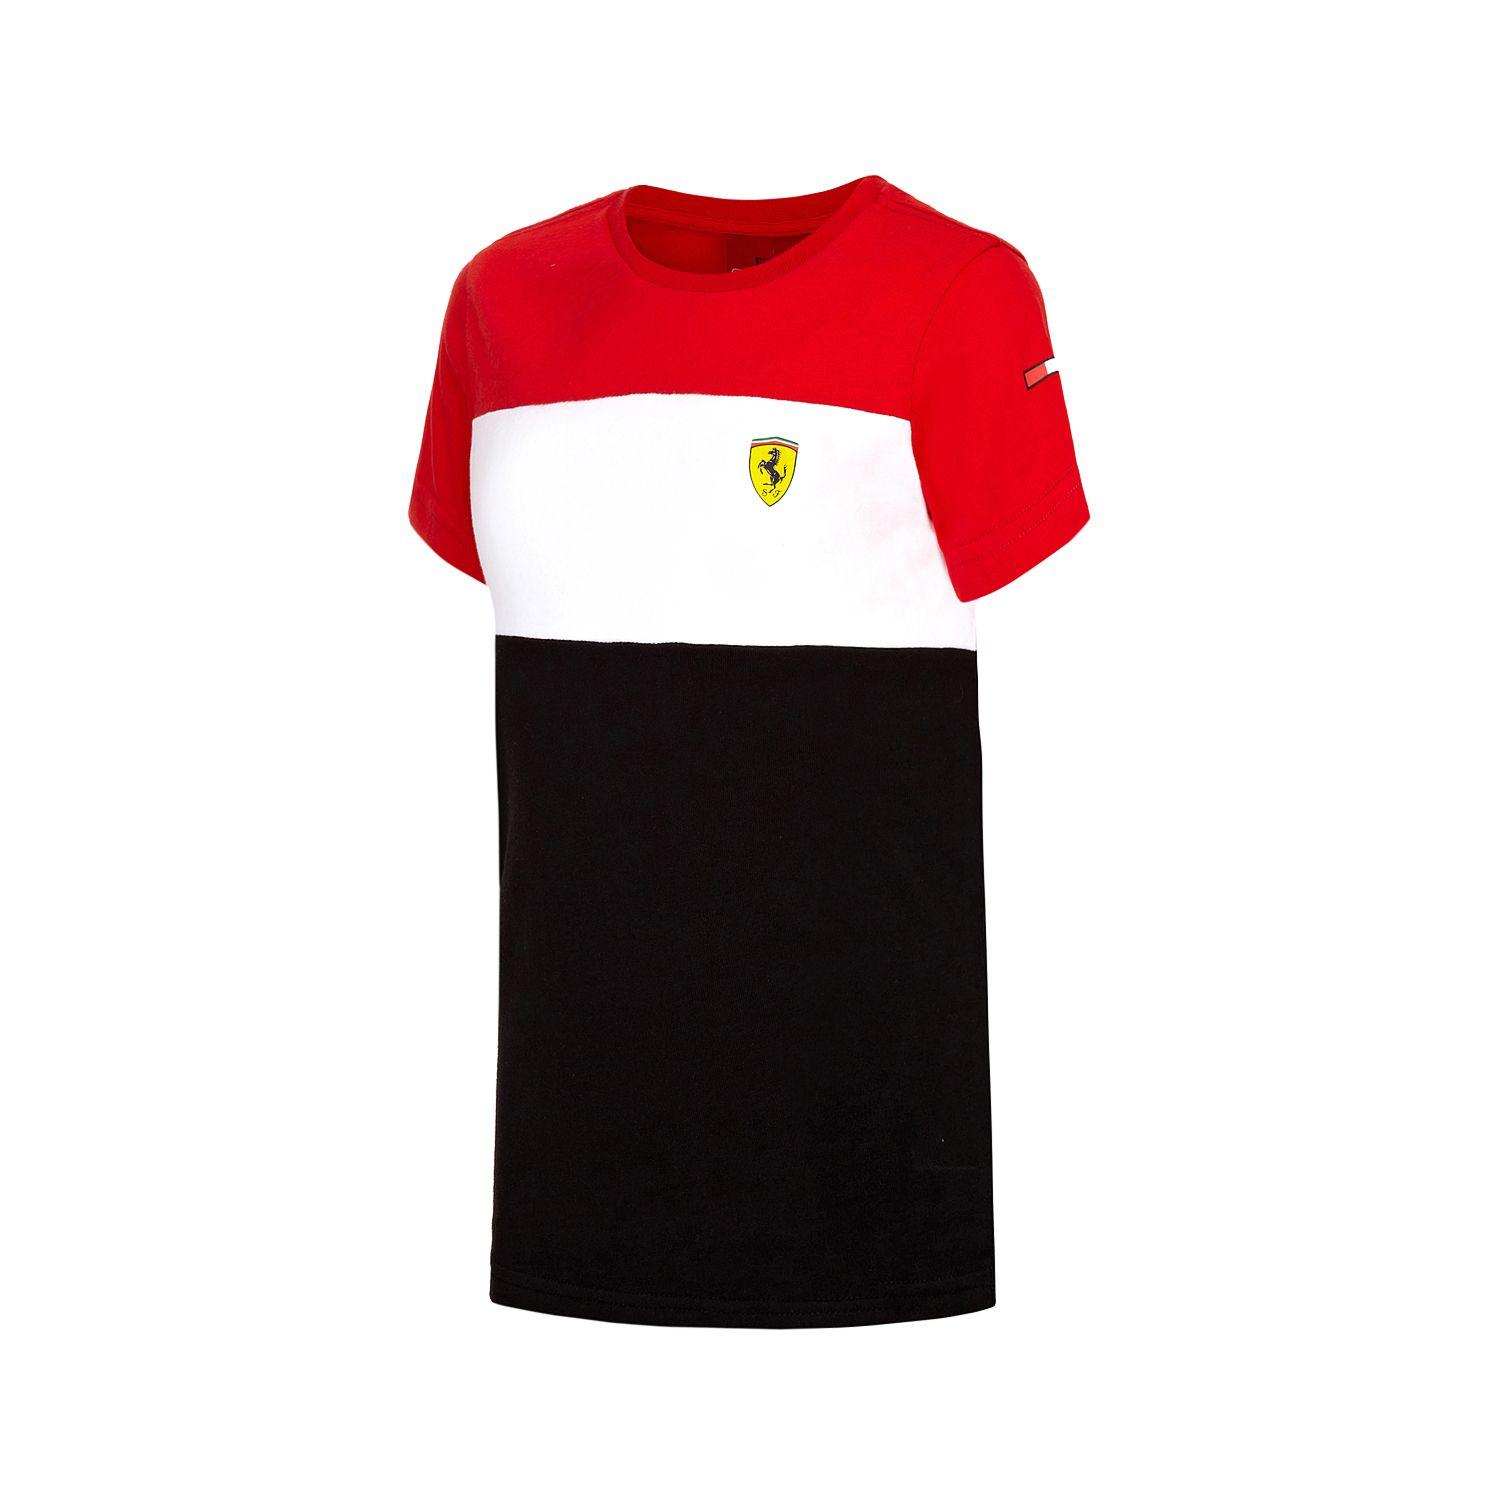 Red White Race Logo - 2016 Ferrari F1 Team Kids Race T-shirt Red/White/Black (128 cm (kids ...